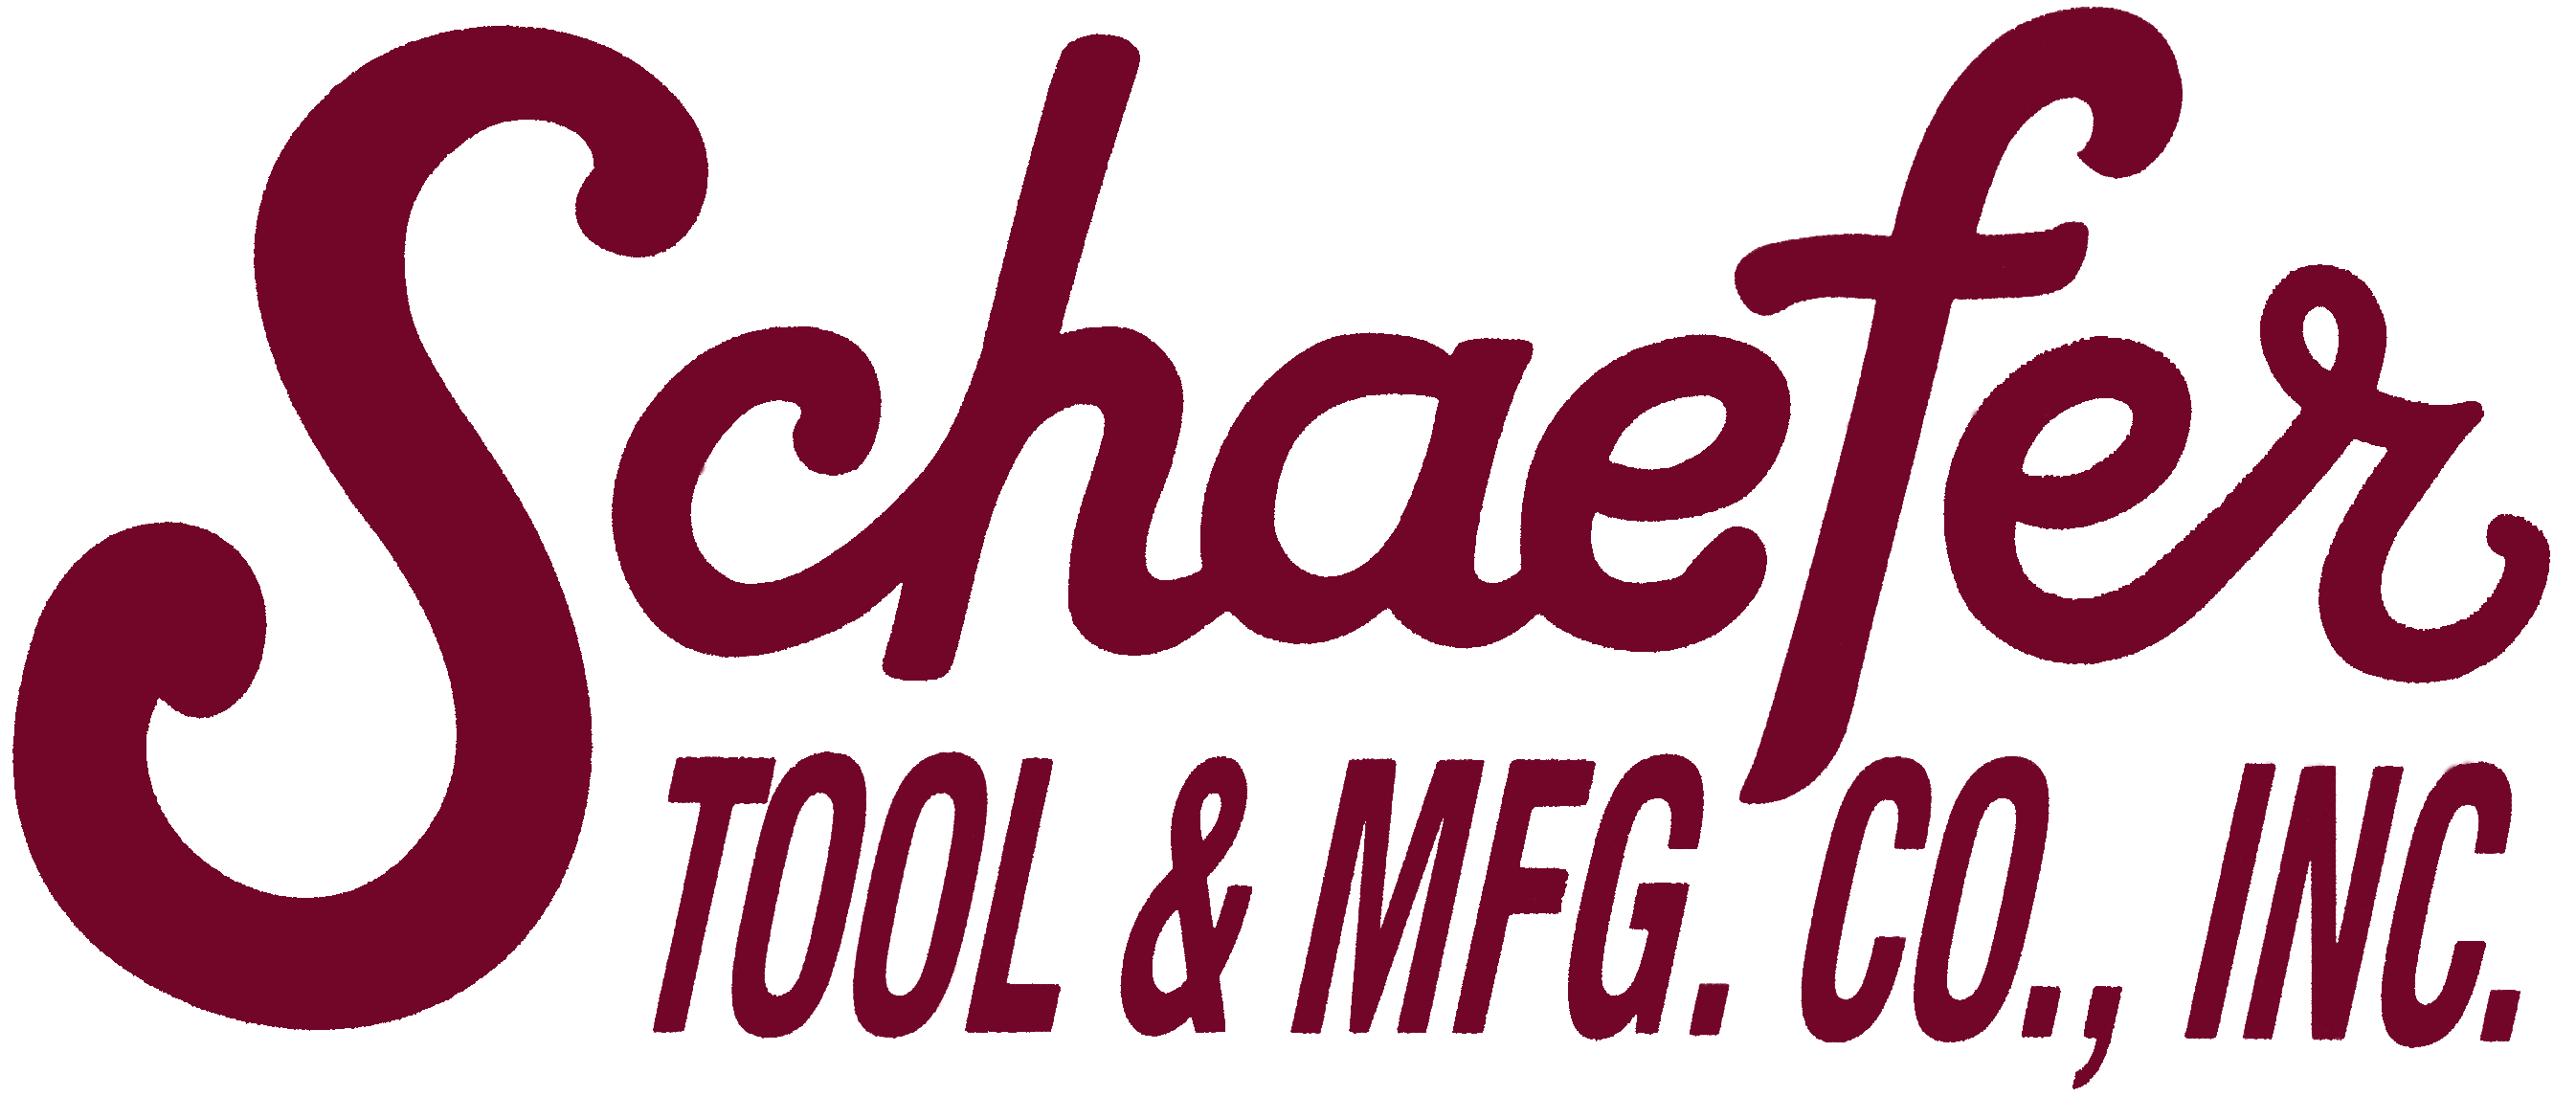 The Schaefer Tools logo